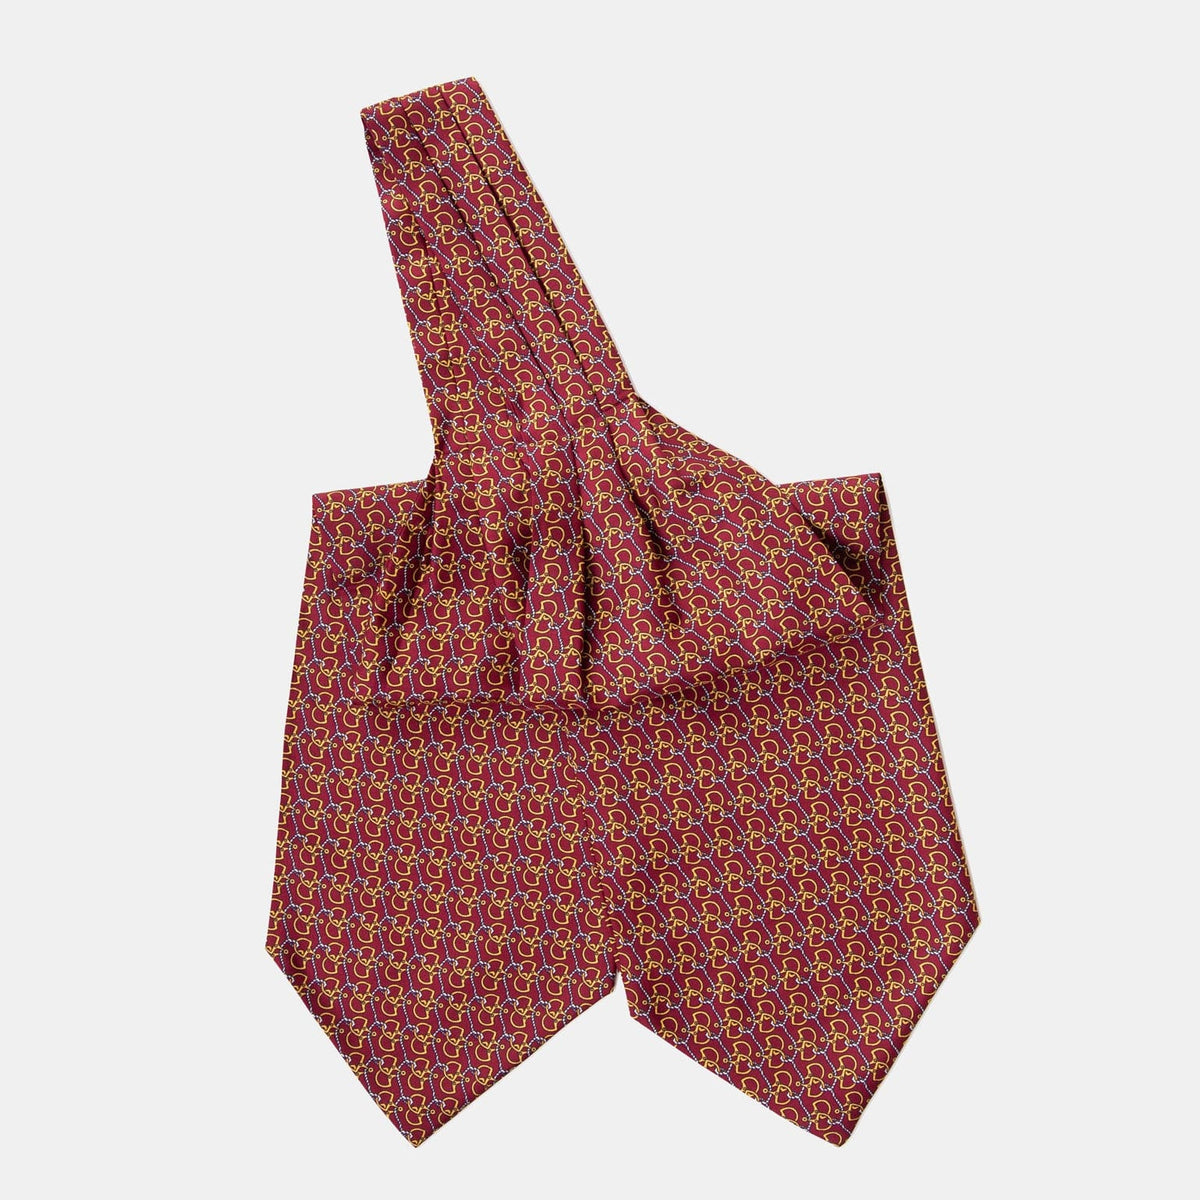 Burgundy Equestrian Silk Ascot Tie - Day Cravat